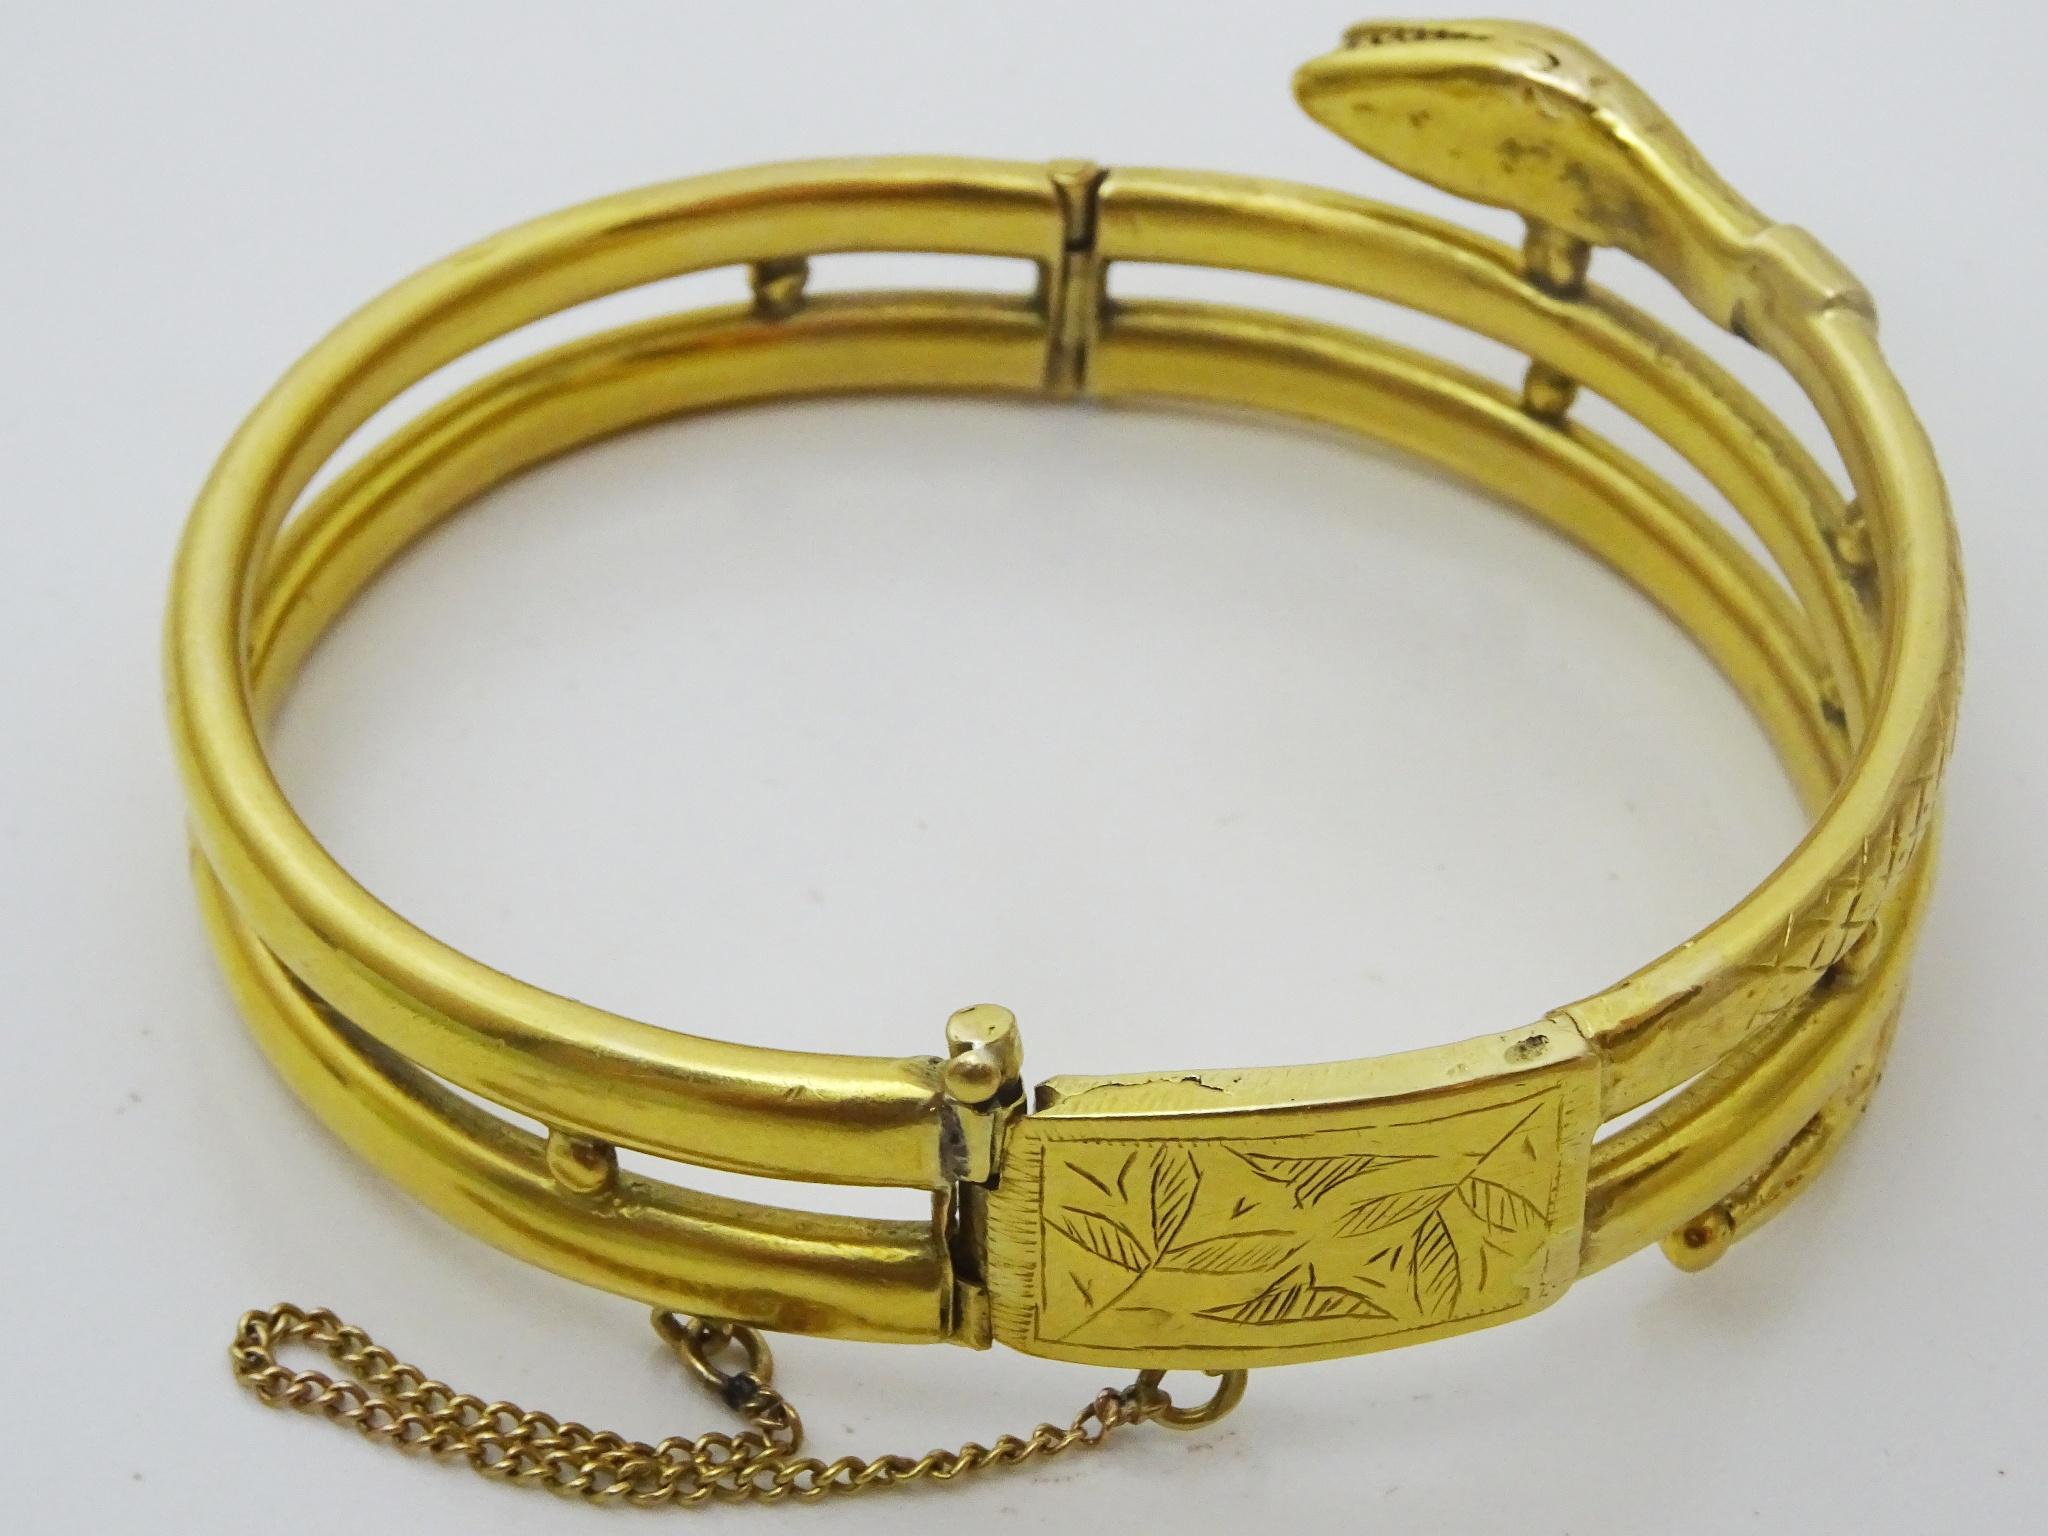 Le serpent a été un symbole utilisé dans les bijoux (principalement les bagues et les bracelets) à travers les âges, la perte de la peau du serpent symbolisant le rajeunissement.
 Parmi les autres symboles, on trouve ceux du bien, du mal, de la